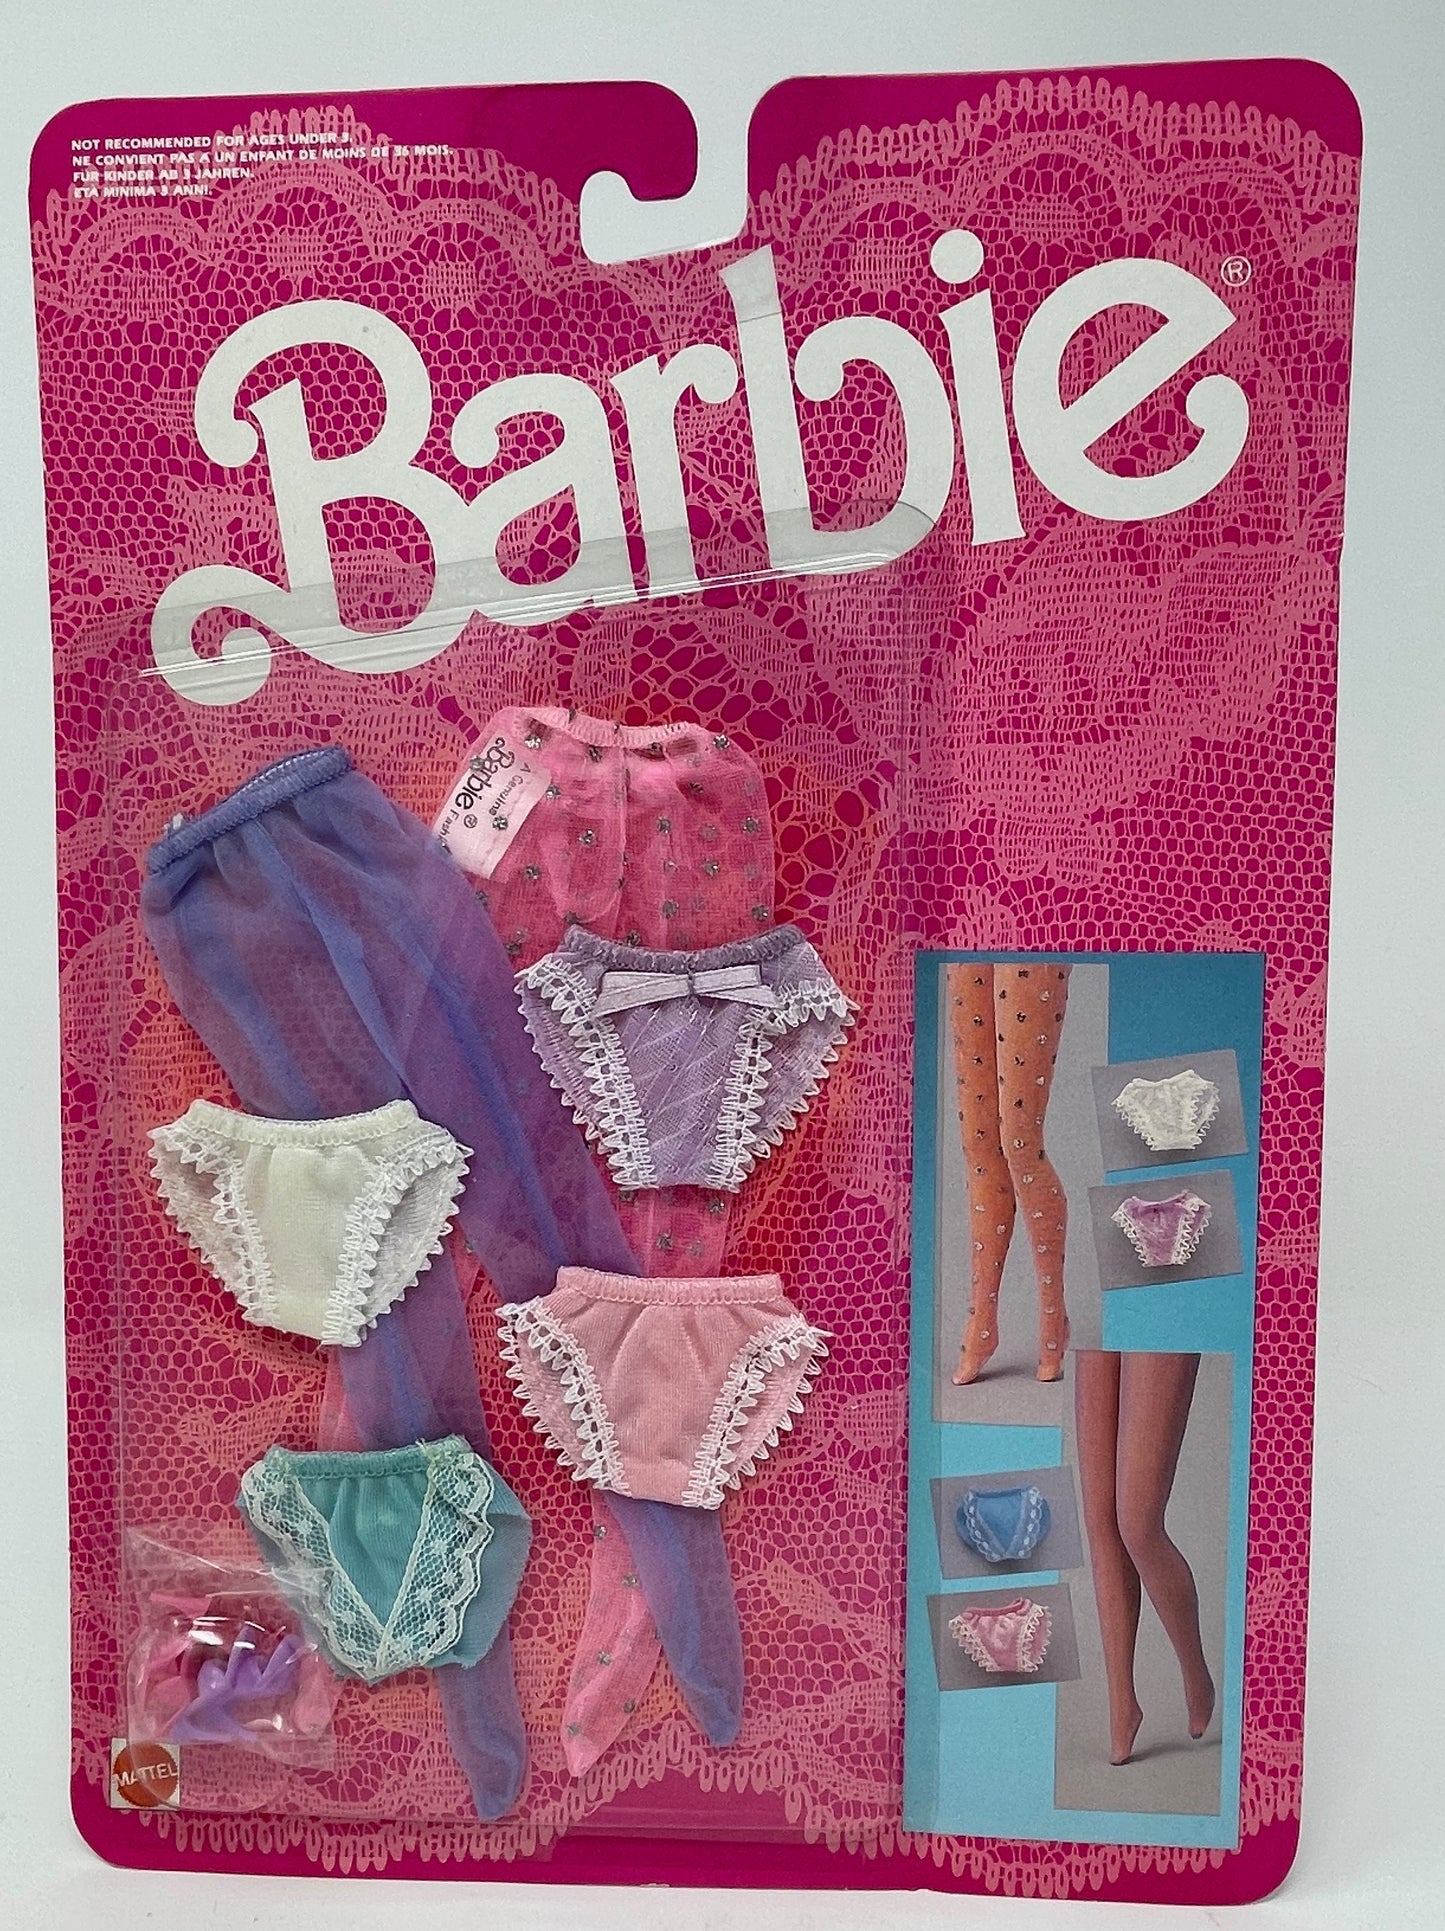 2 vintage tlc Barbie's